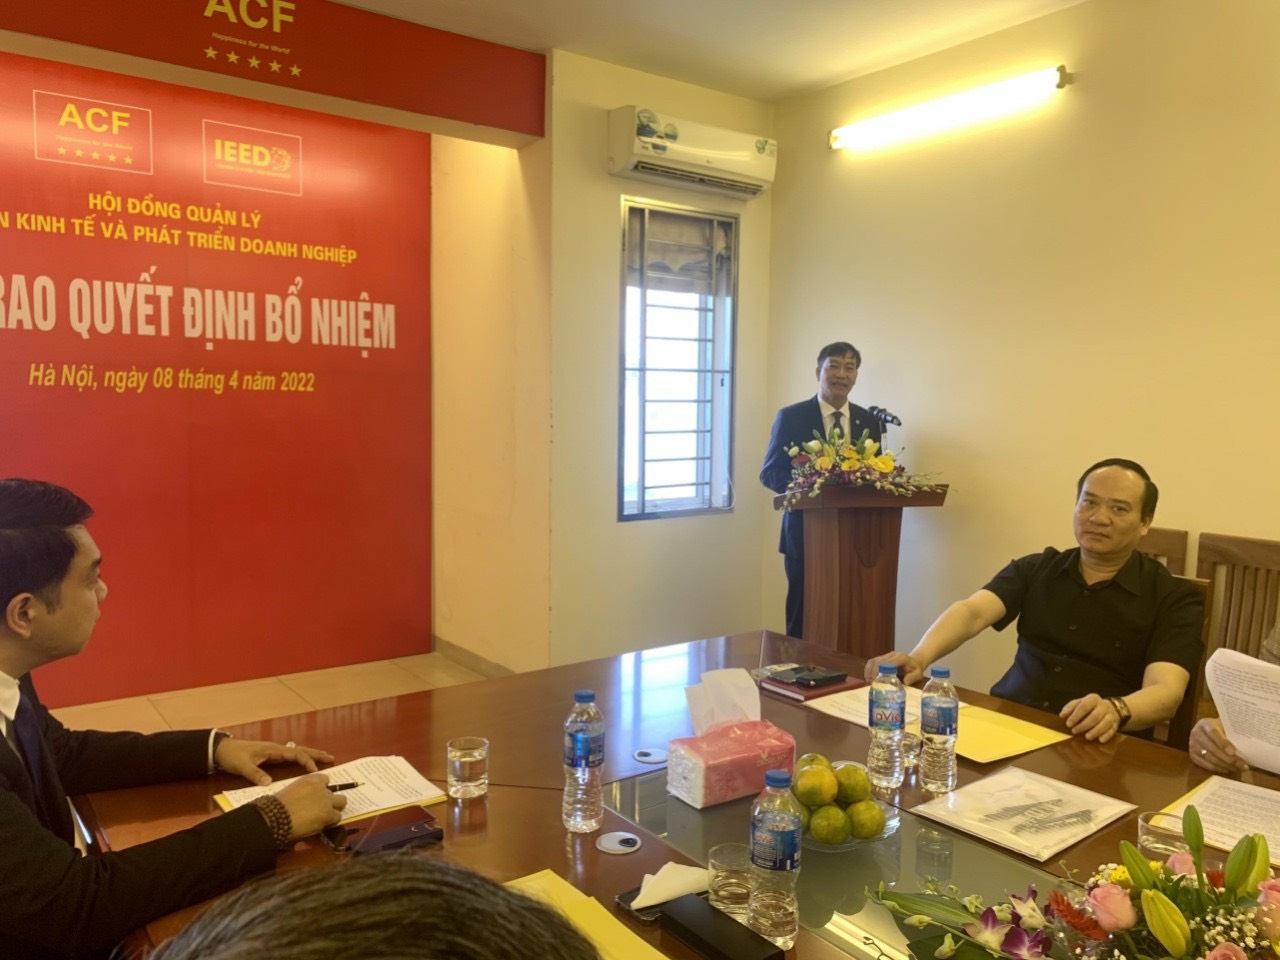 Ông Trần Ngọc Nam - Phó viện trưởng , đại diện 03 đồng chí lên phát biểu nhận nhiệm vụ